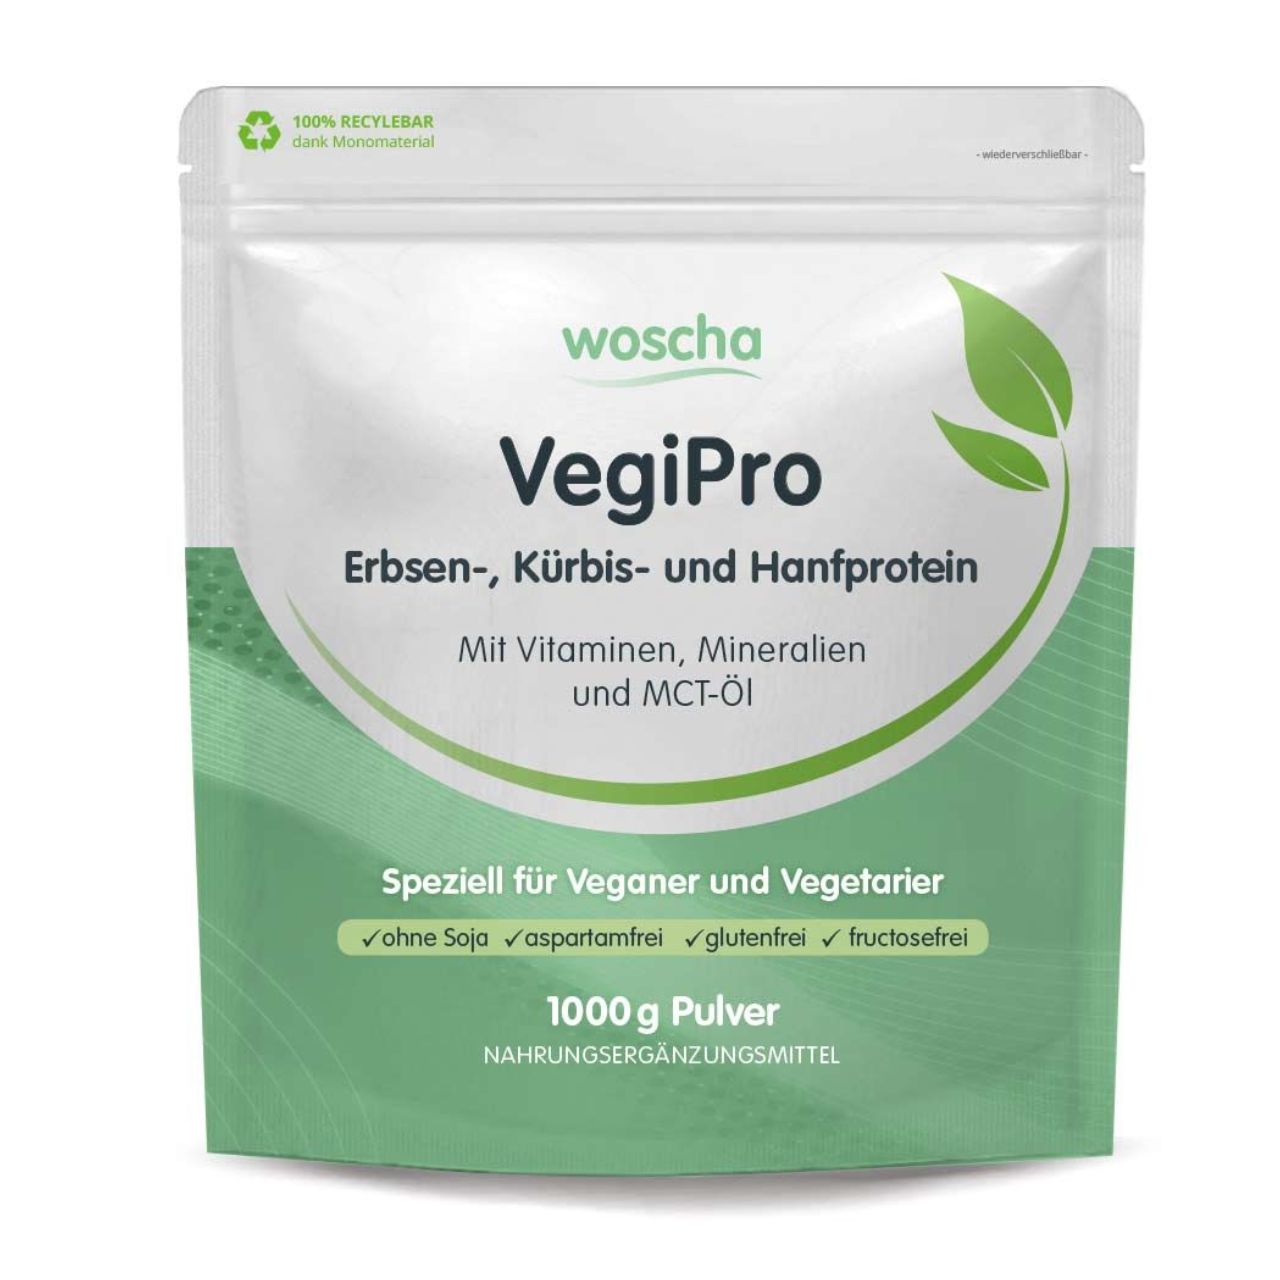 Woscha VegiPro Erbsen-, Kürbis- und Hanfprotein von podo medi beinhaltet 1000 Gramm Pulver